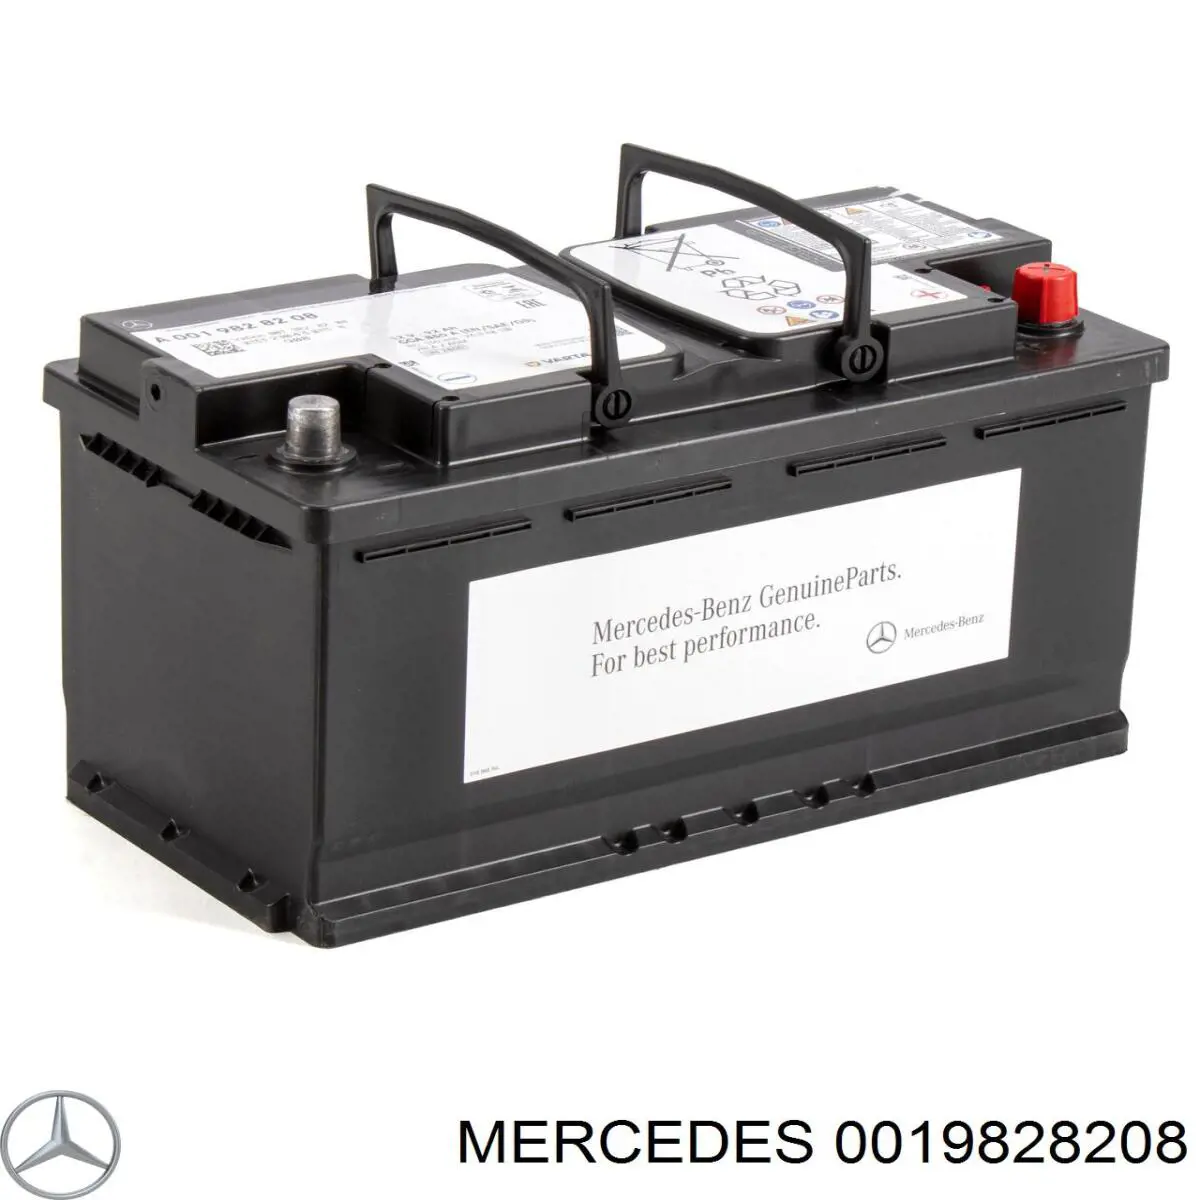 0019828208 Mercedes bateria recarregável (pilha)